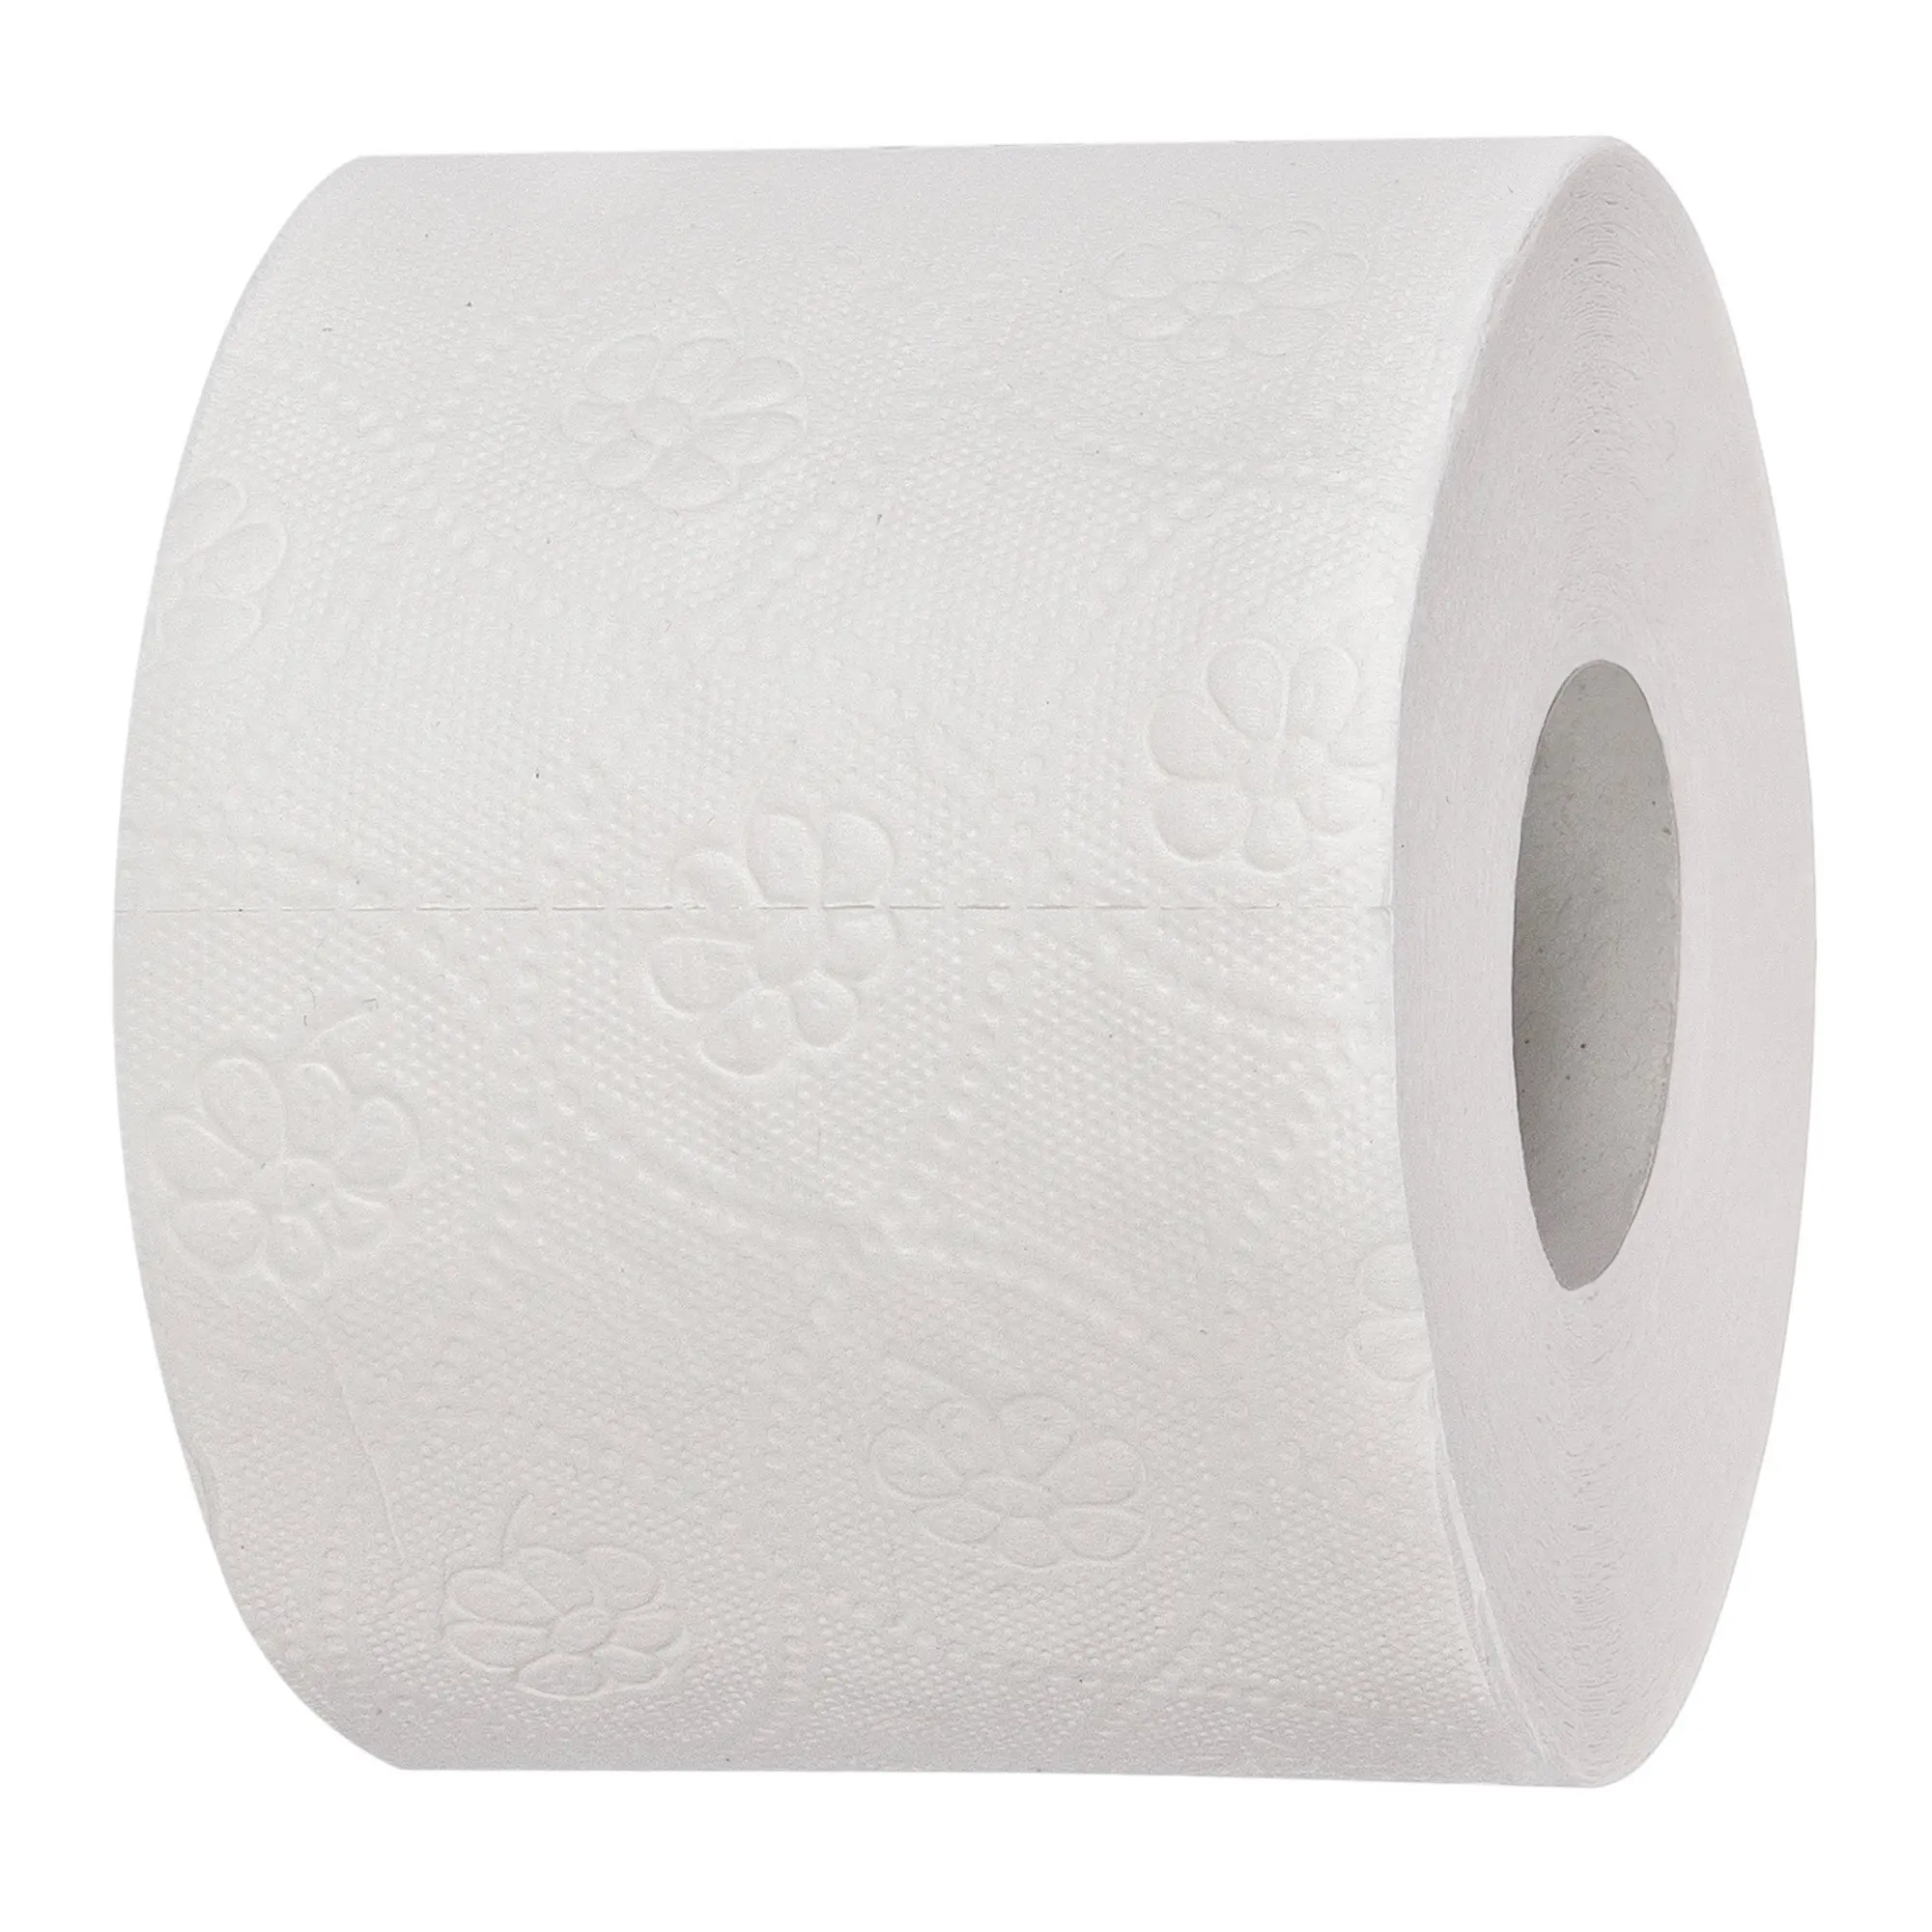 Sarima Toilettenpapier 3-lagig 250 Blatt Zellstoff hochweiß